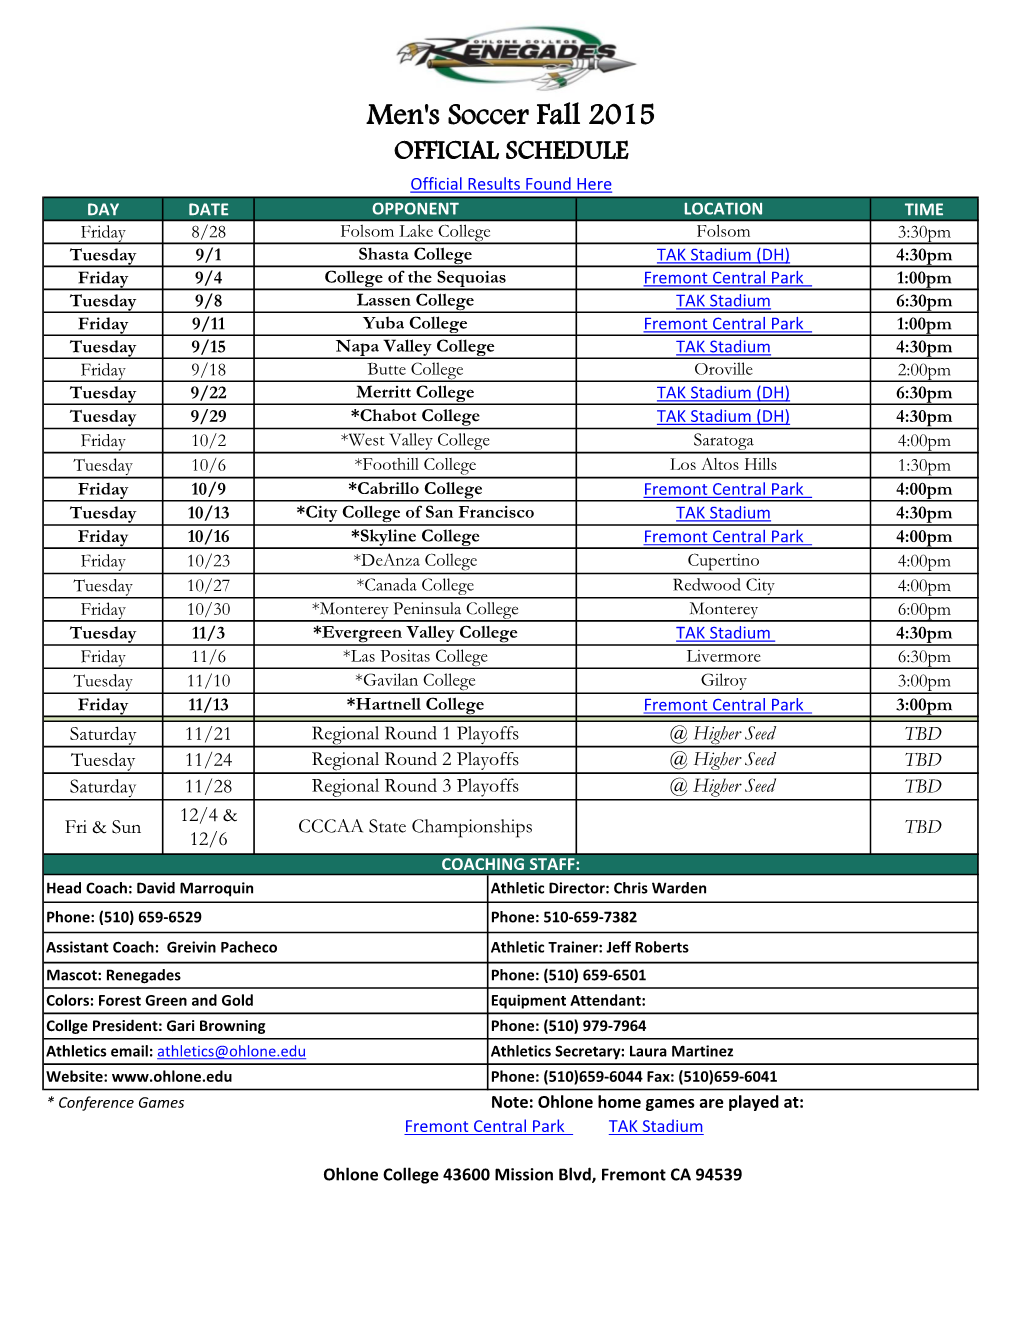 Men's Soccer 2015 Schedule